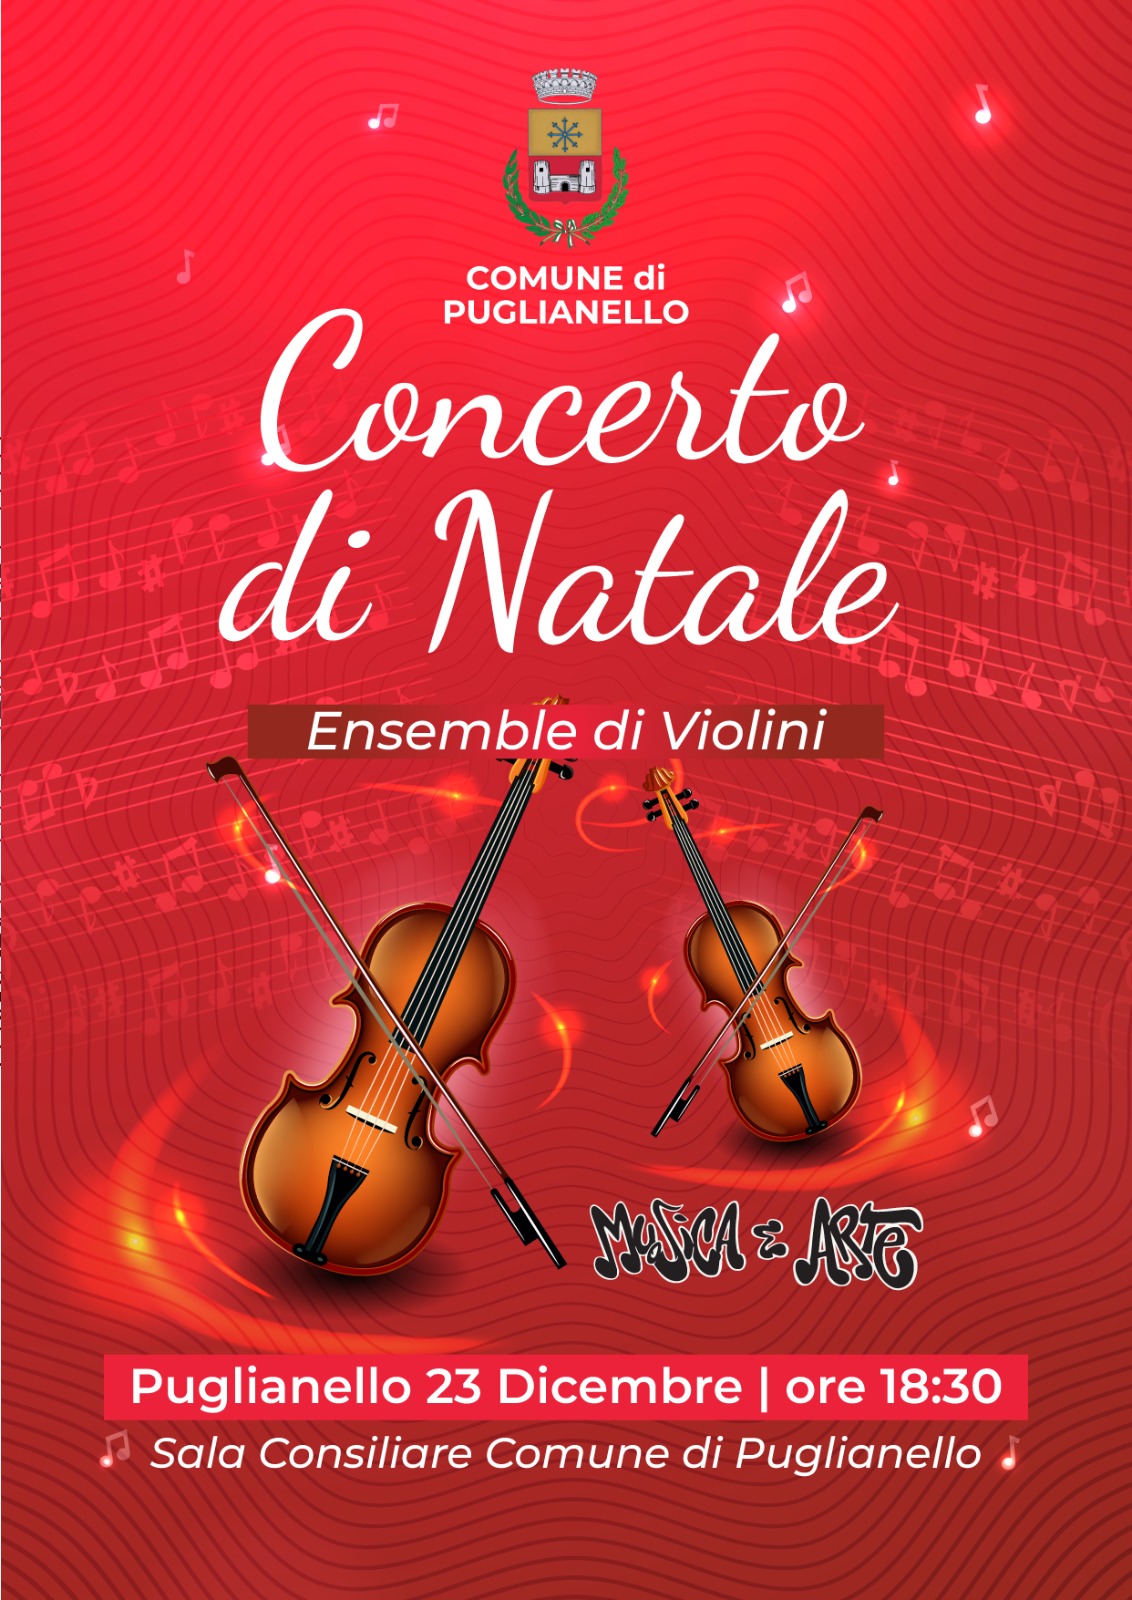 Ensemble con violini a Puglianello, Rubano: “Concerto in Comune per festeggiare il Natale”